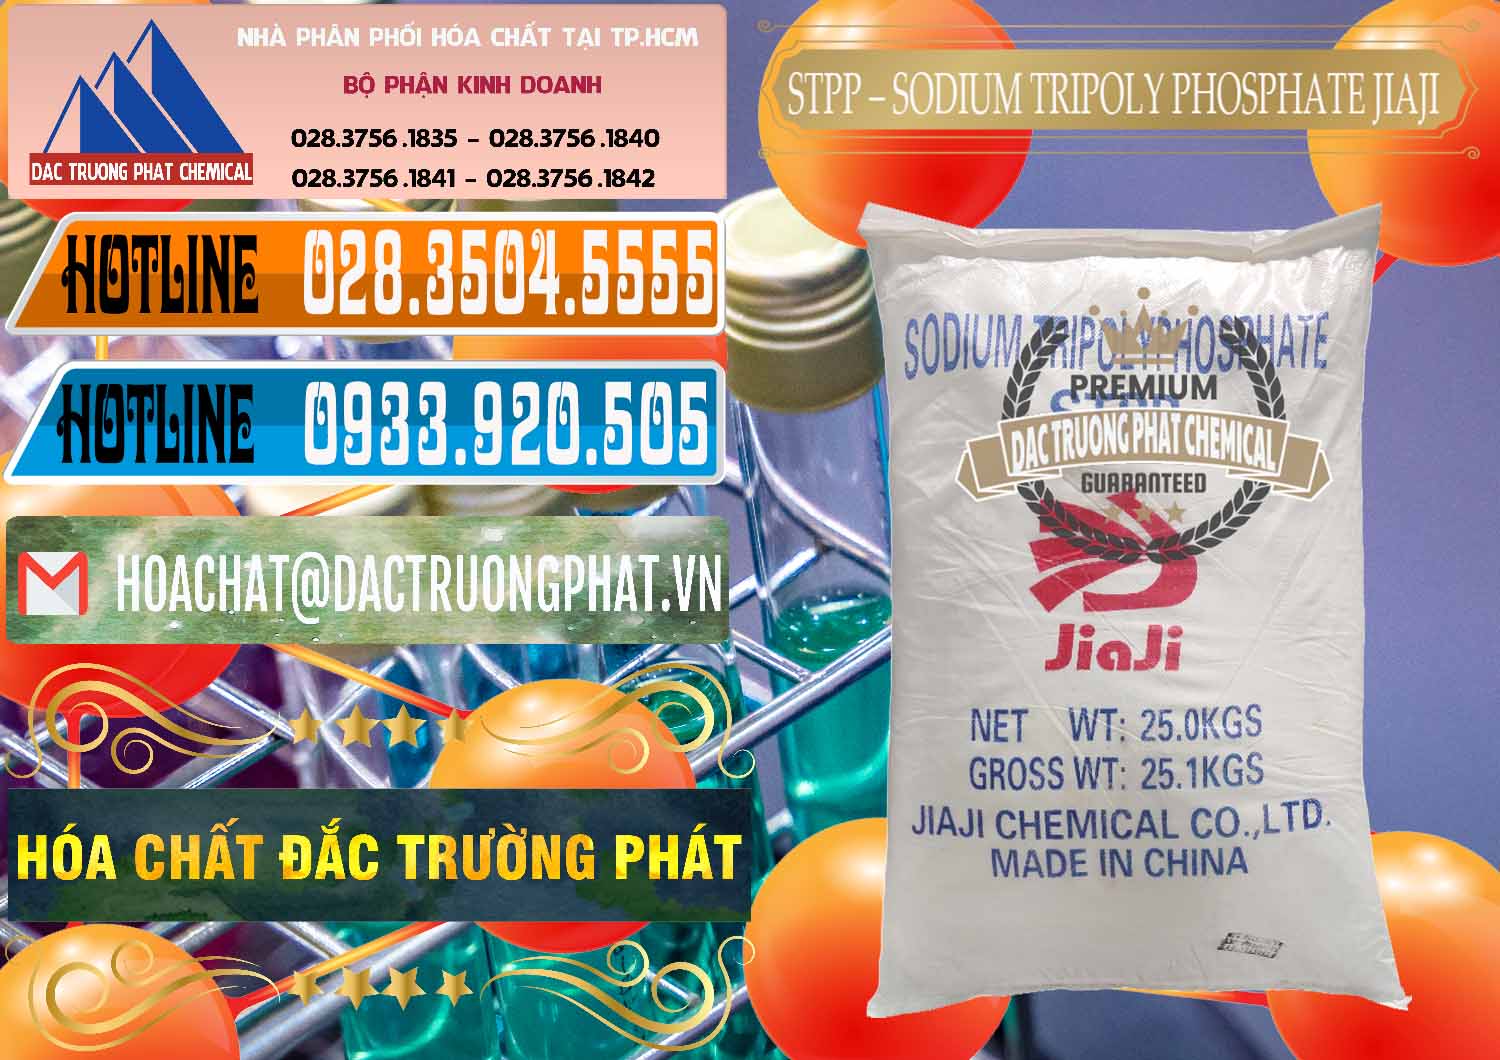 Cty chuyên bán ( cung ứng ) Sodium Tripoly Phosphate - STPP Jiaji Trung Quốc China - 0154 - Đơn vị chuyên kinh doanh - phân phối hóa chất tại TP.HCM - stmp.net